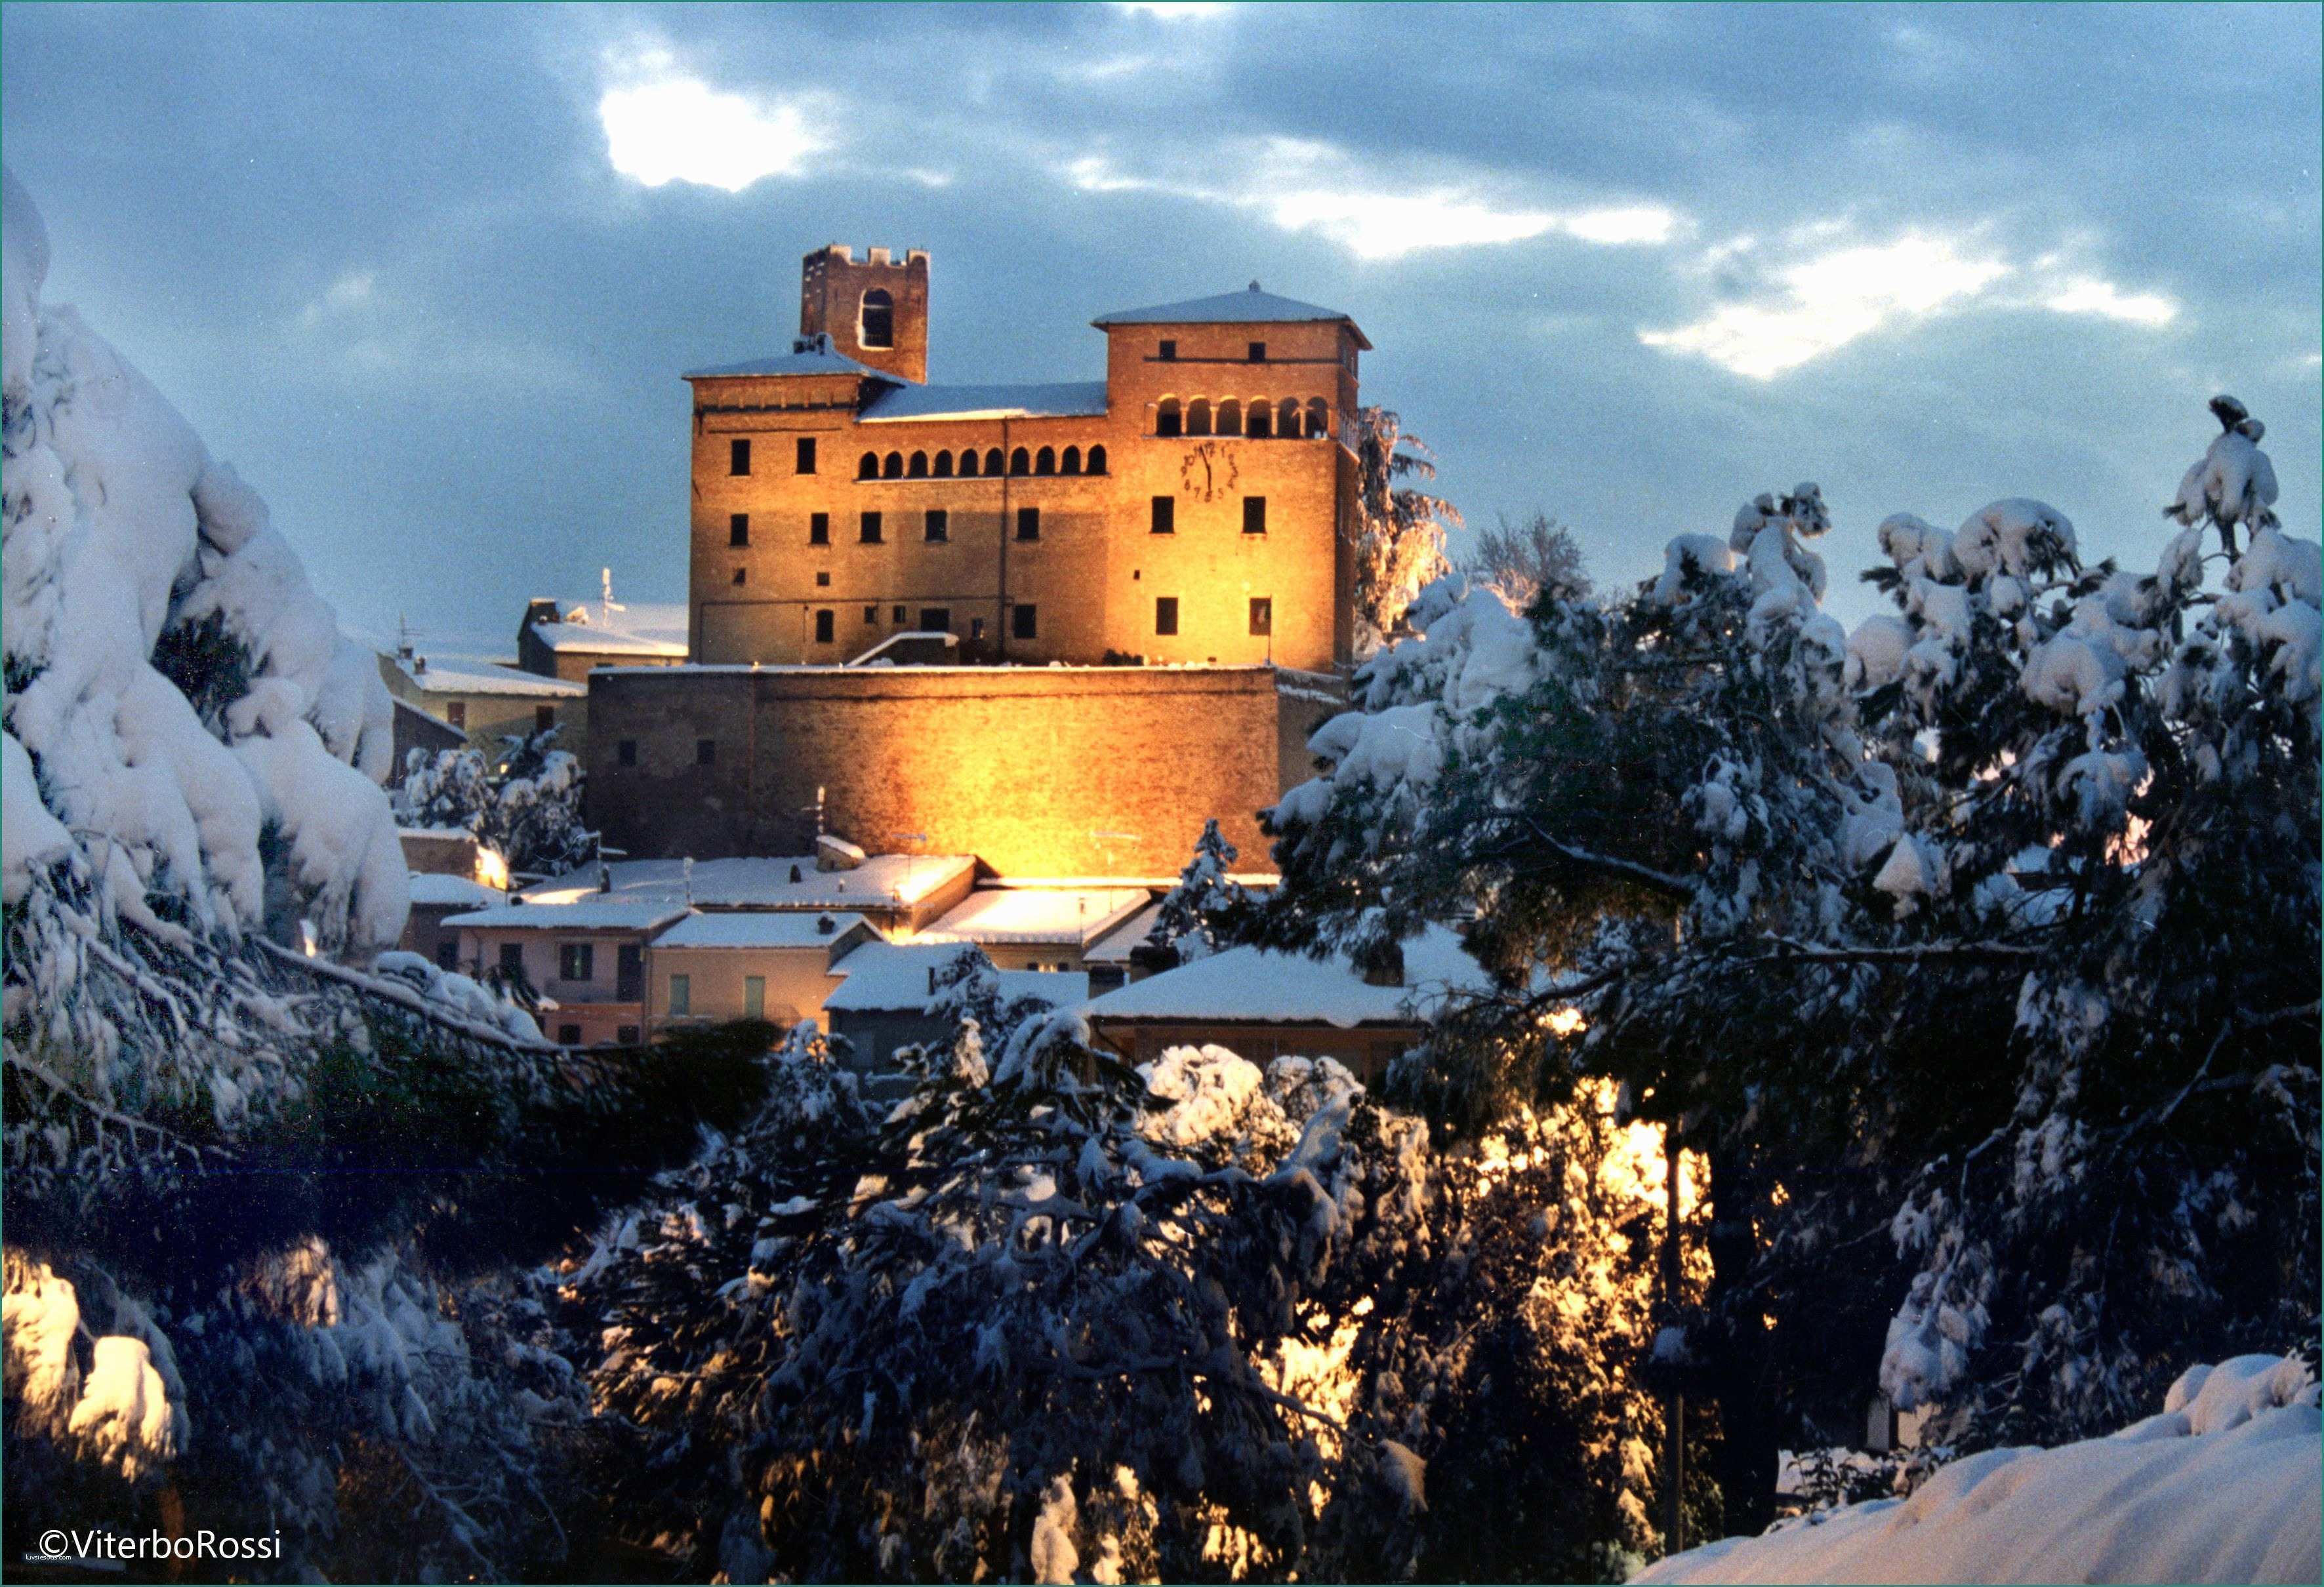 Il castello di Longiano immerso nel paesaggio invernale Ph